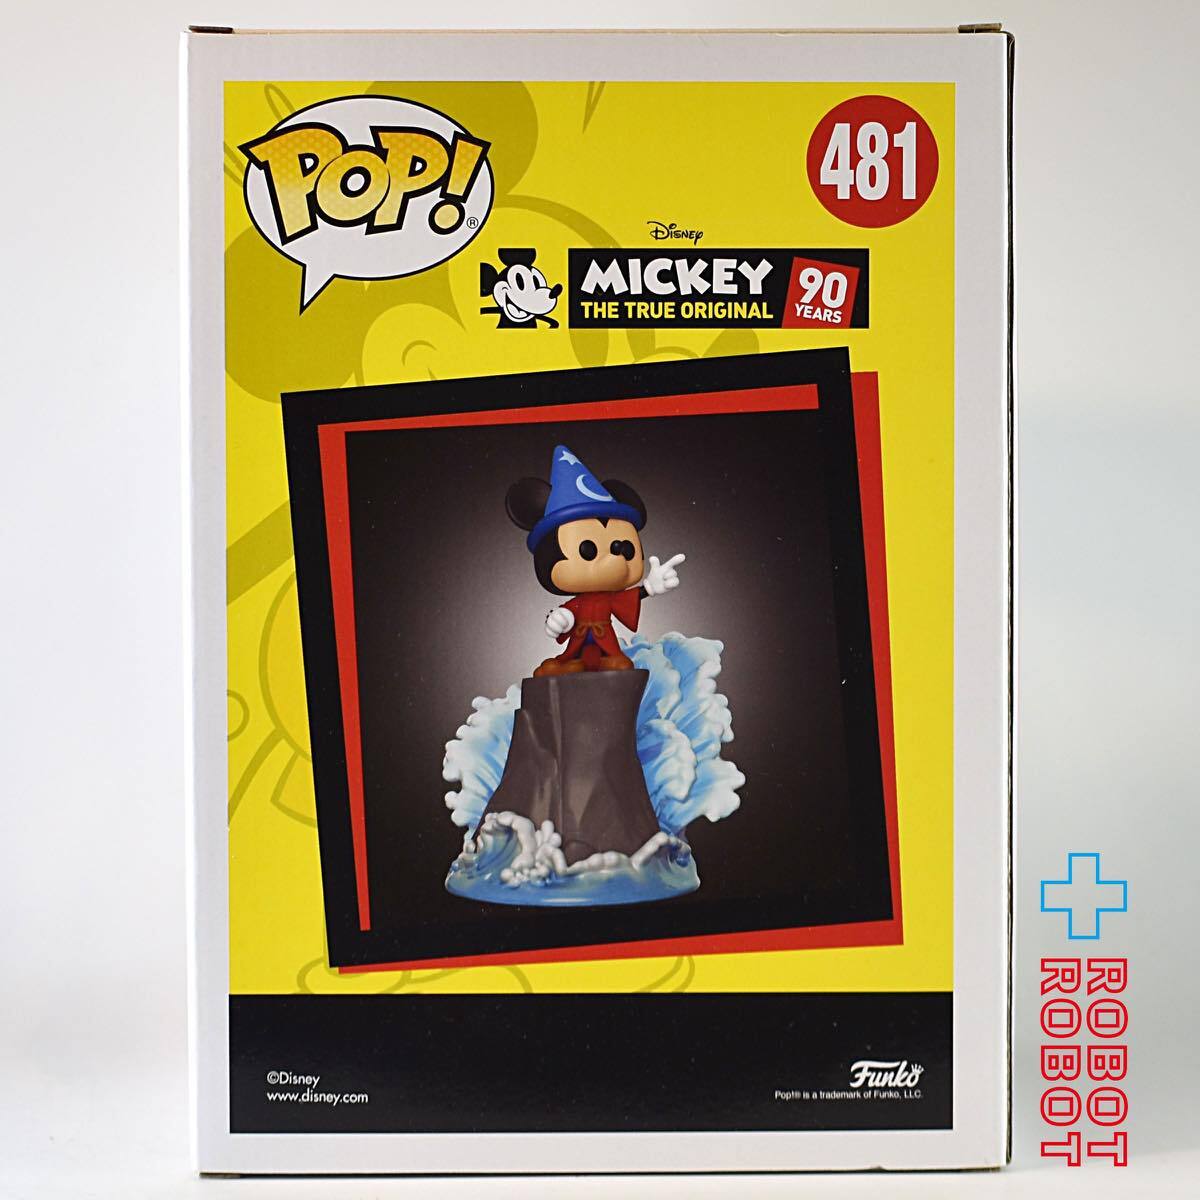 ファンコ POP! 481 ディズニー ミッキー トゥルーオリジナル 90周年記念 魔法使いミッキー ムービーモーメント ボックスランチ限定